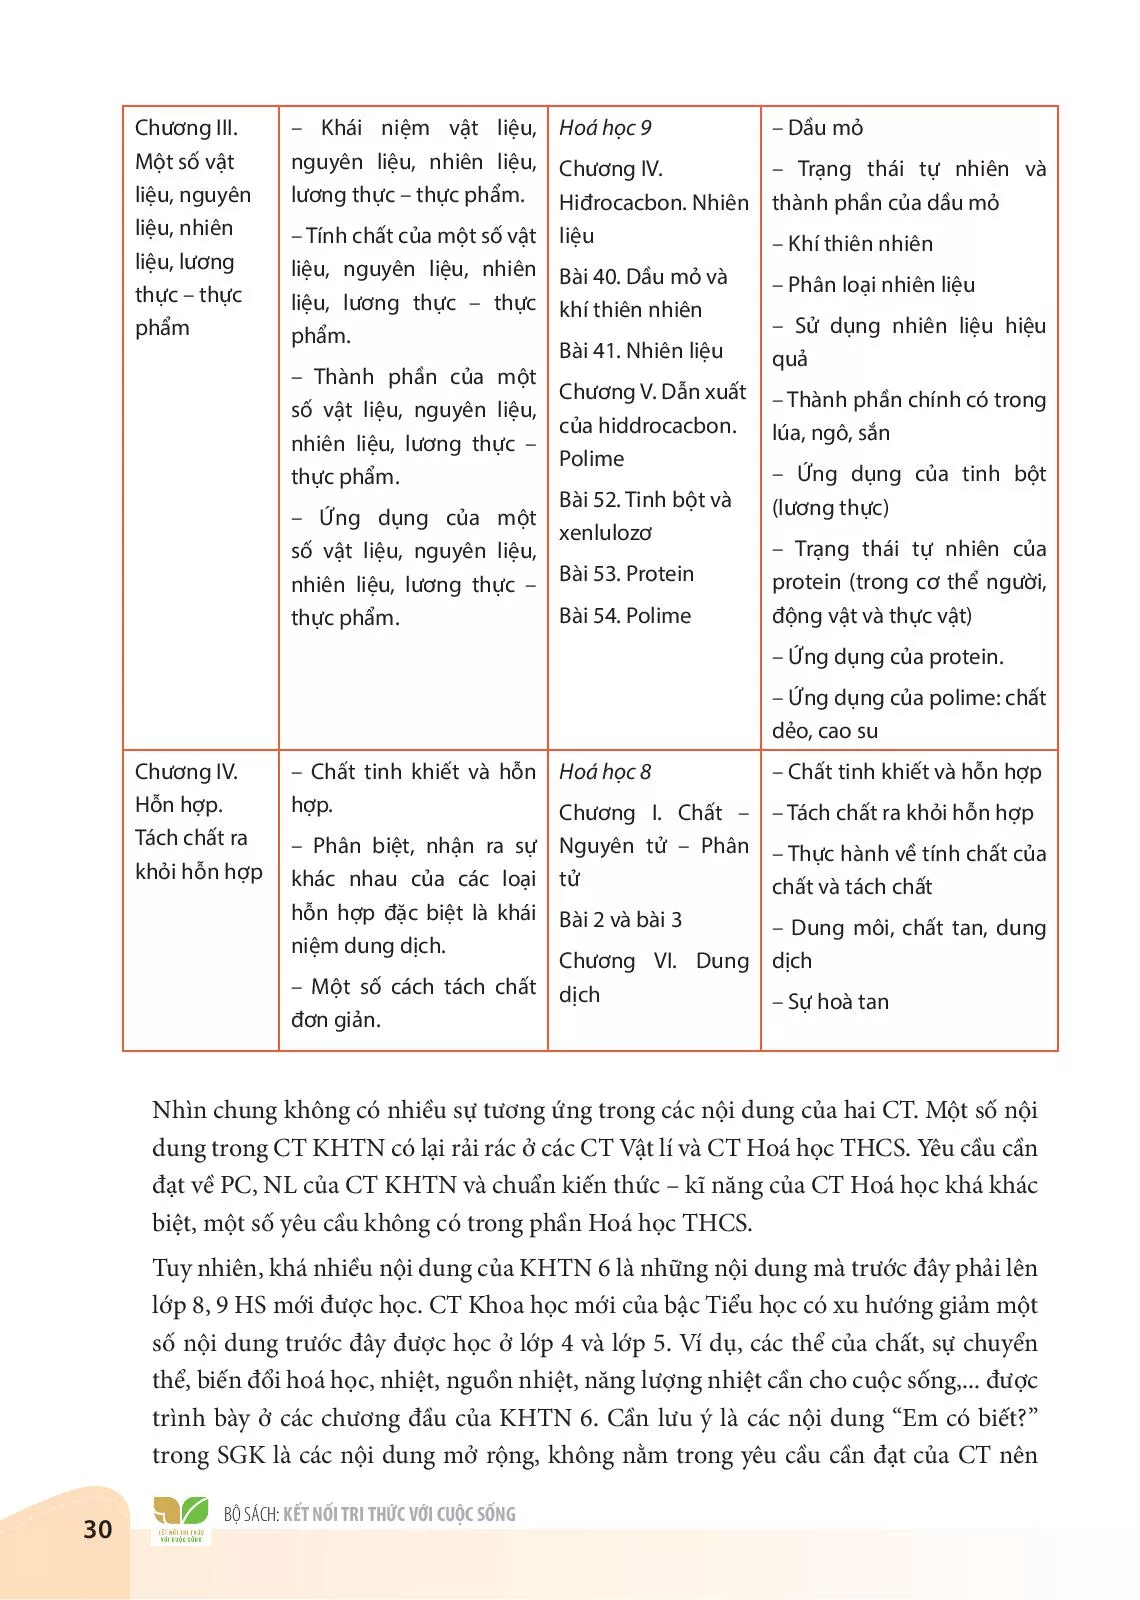 I. So sánh nội dung CT các chương II, III và IV của KHTN 6 với các nội dung tương ứng của các chương trong CT Hoá học THCS hiện hành